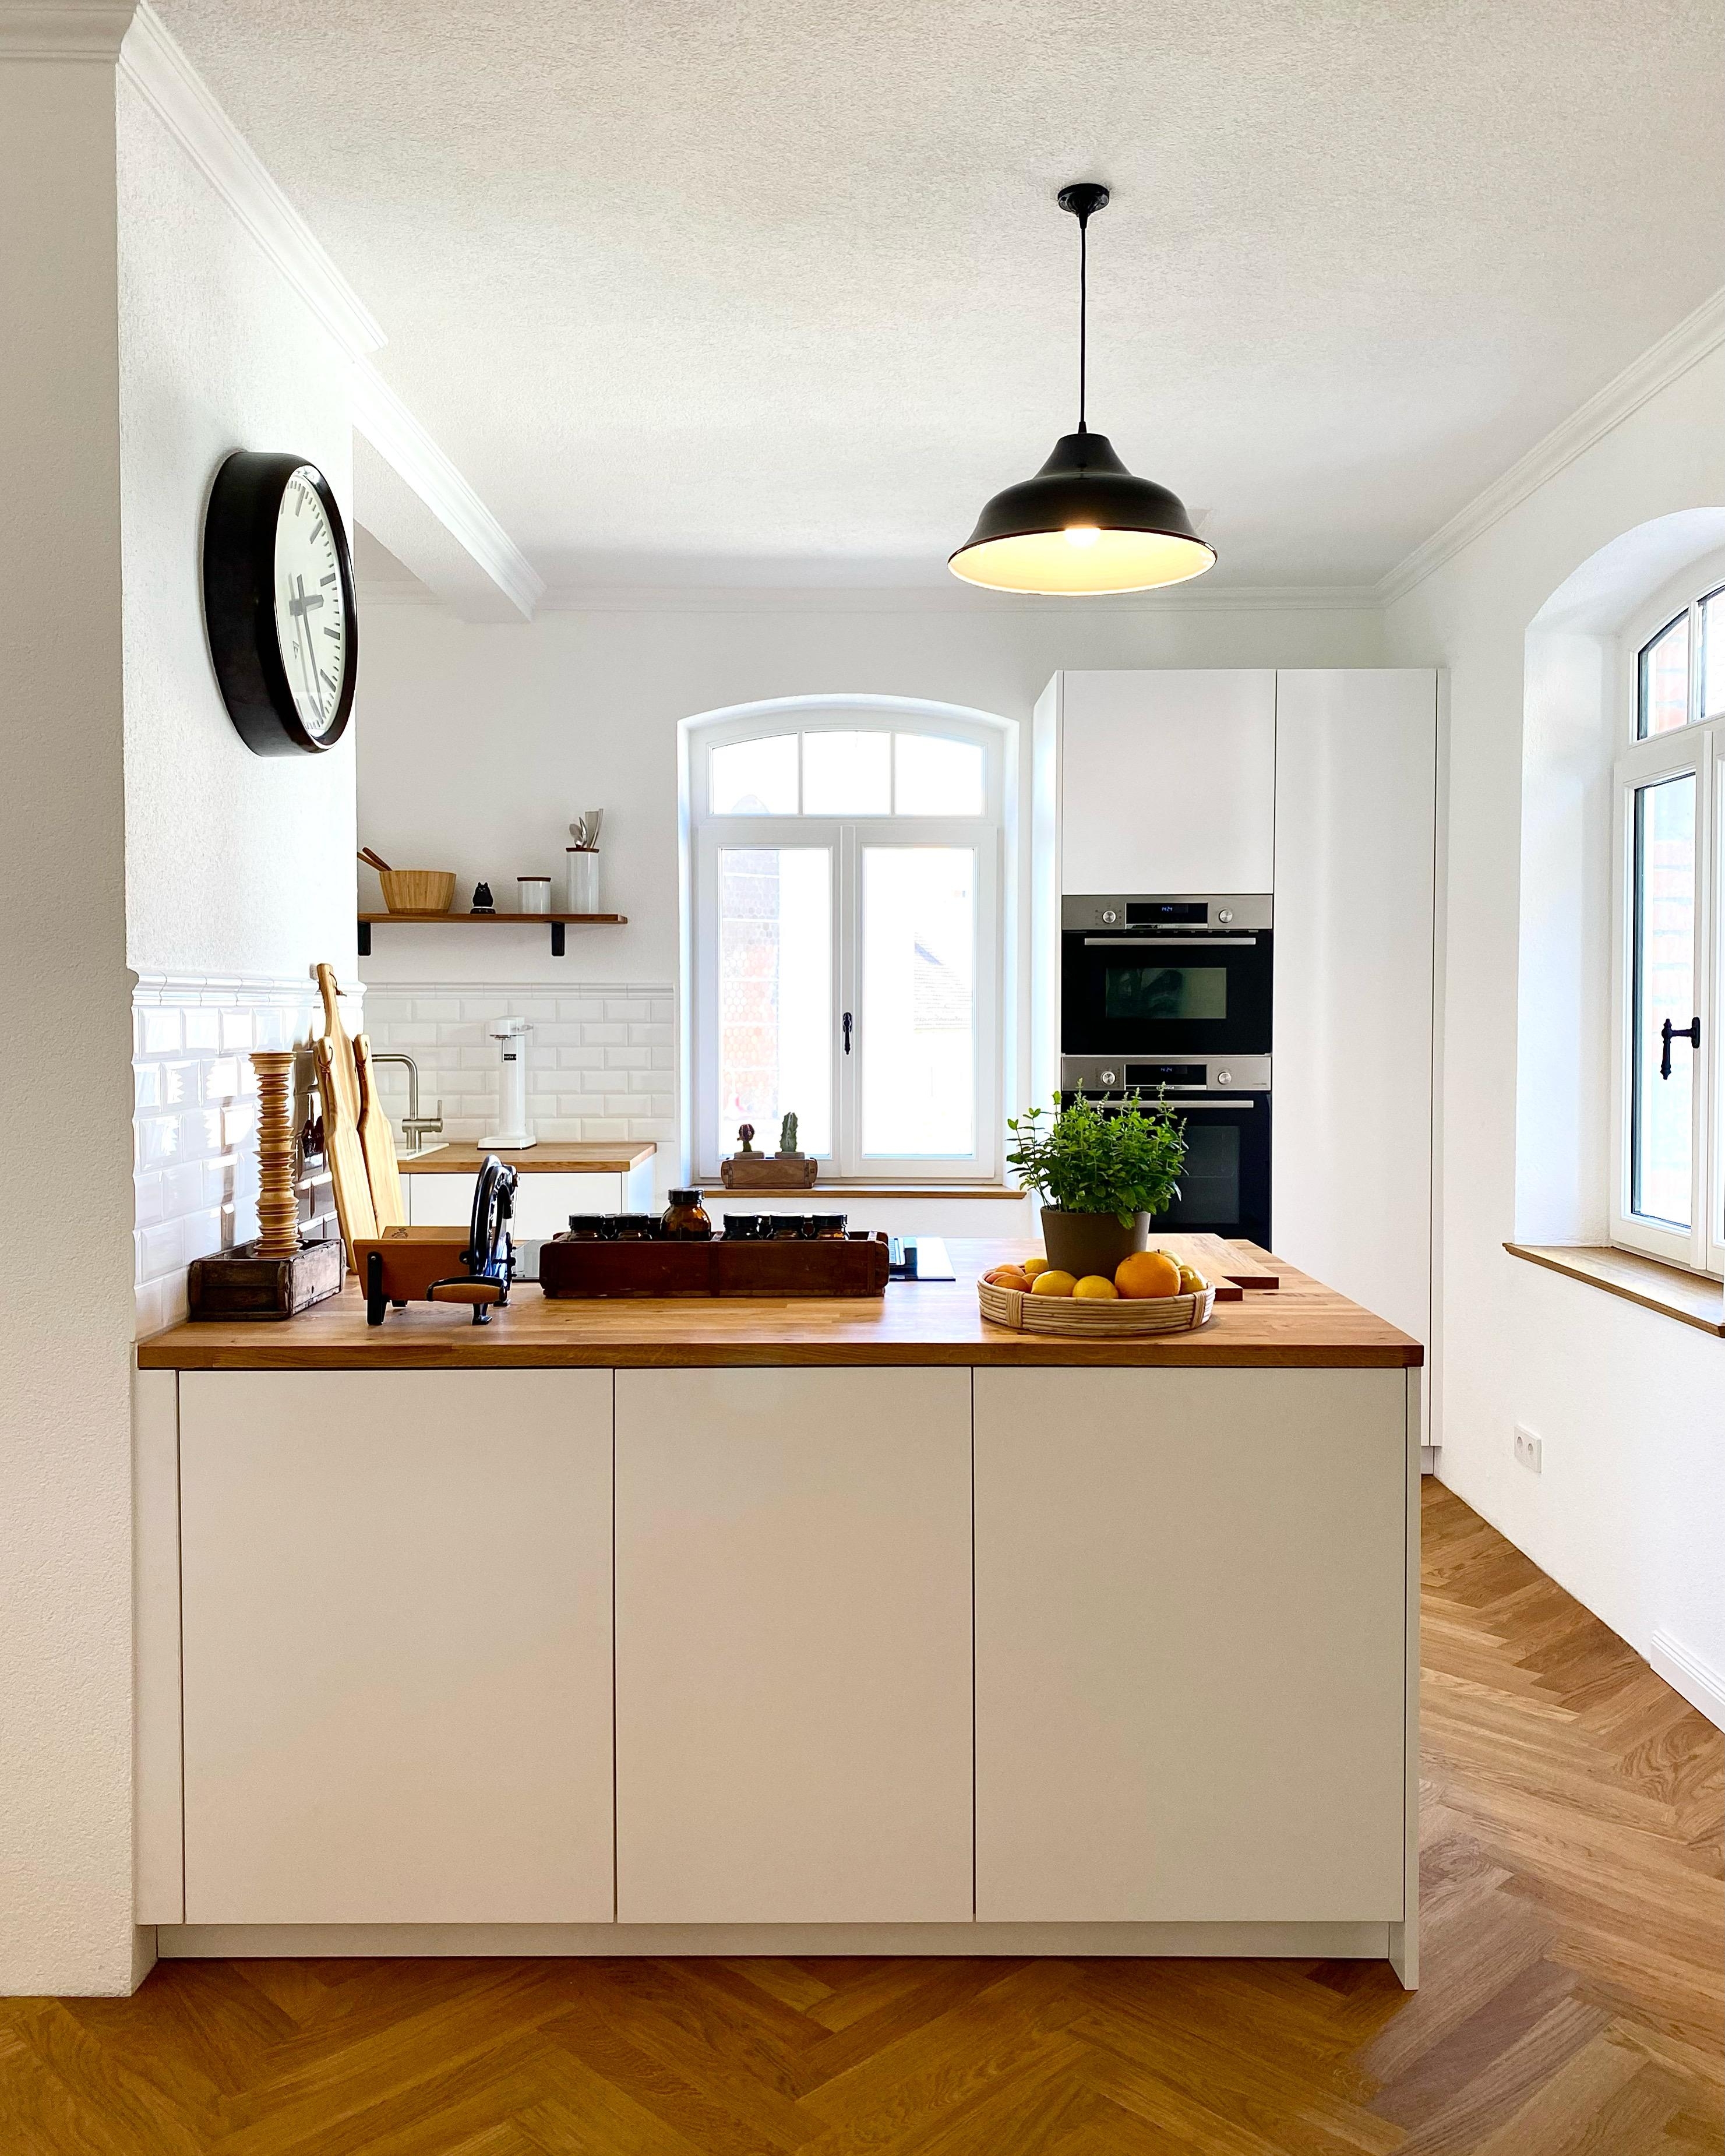 #küche #interior #altbau #scandi #sanierung